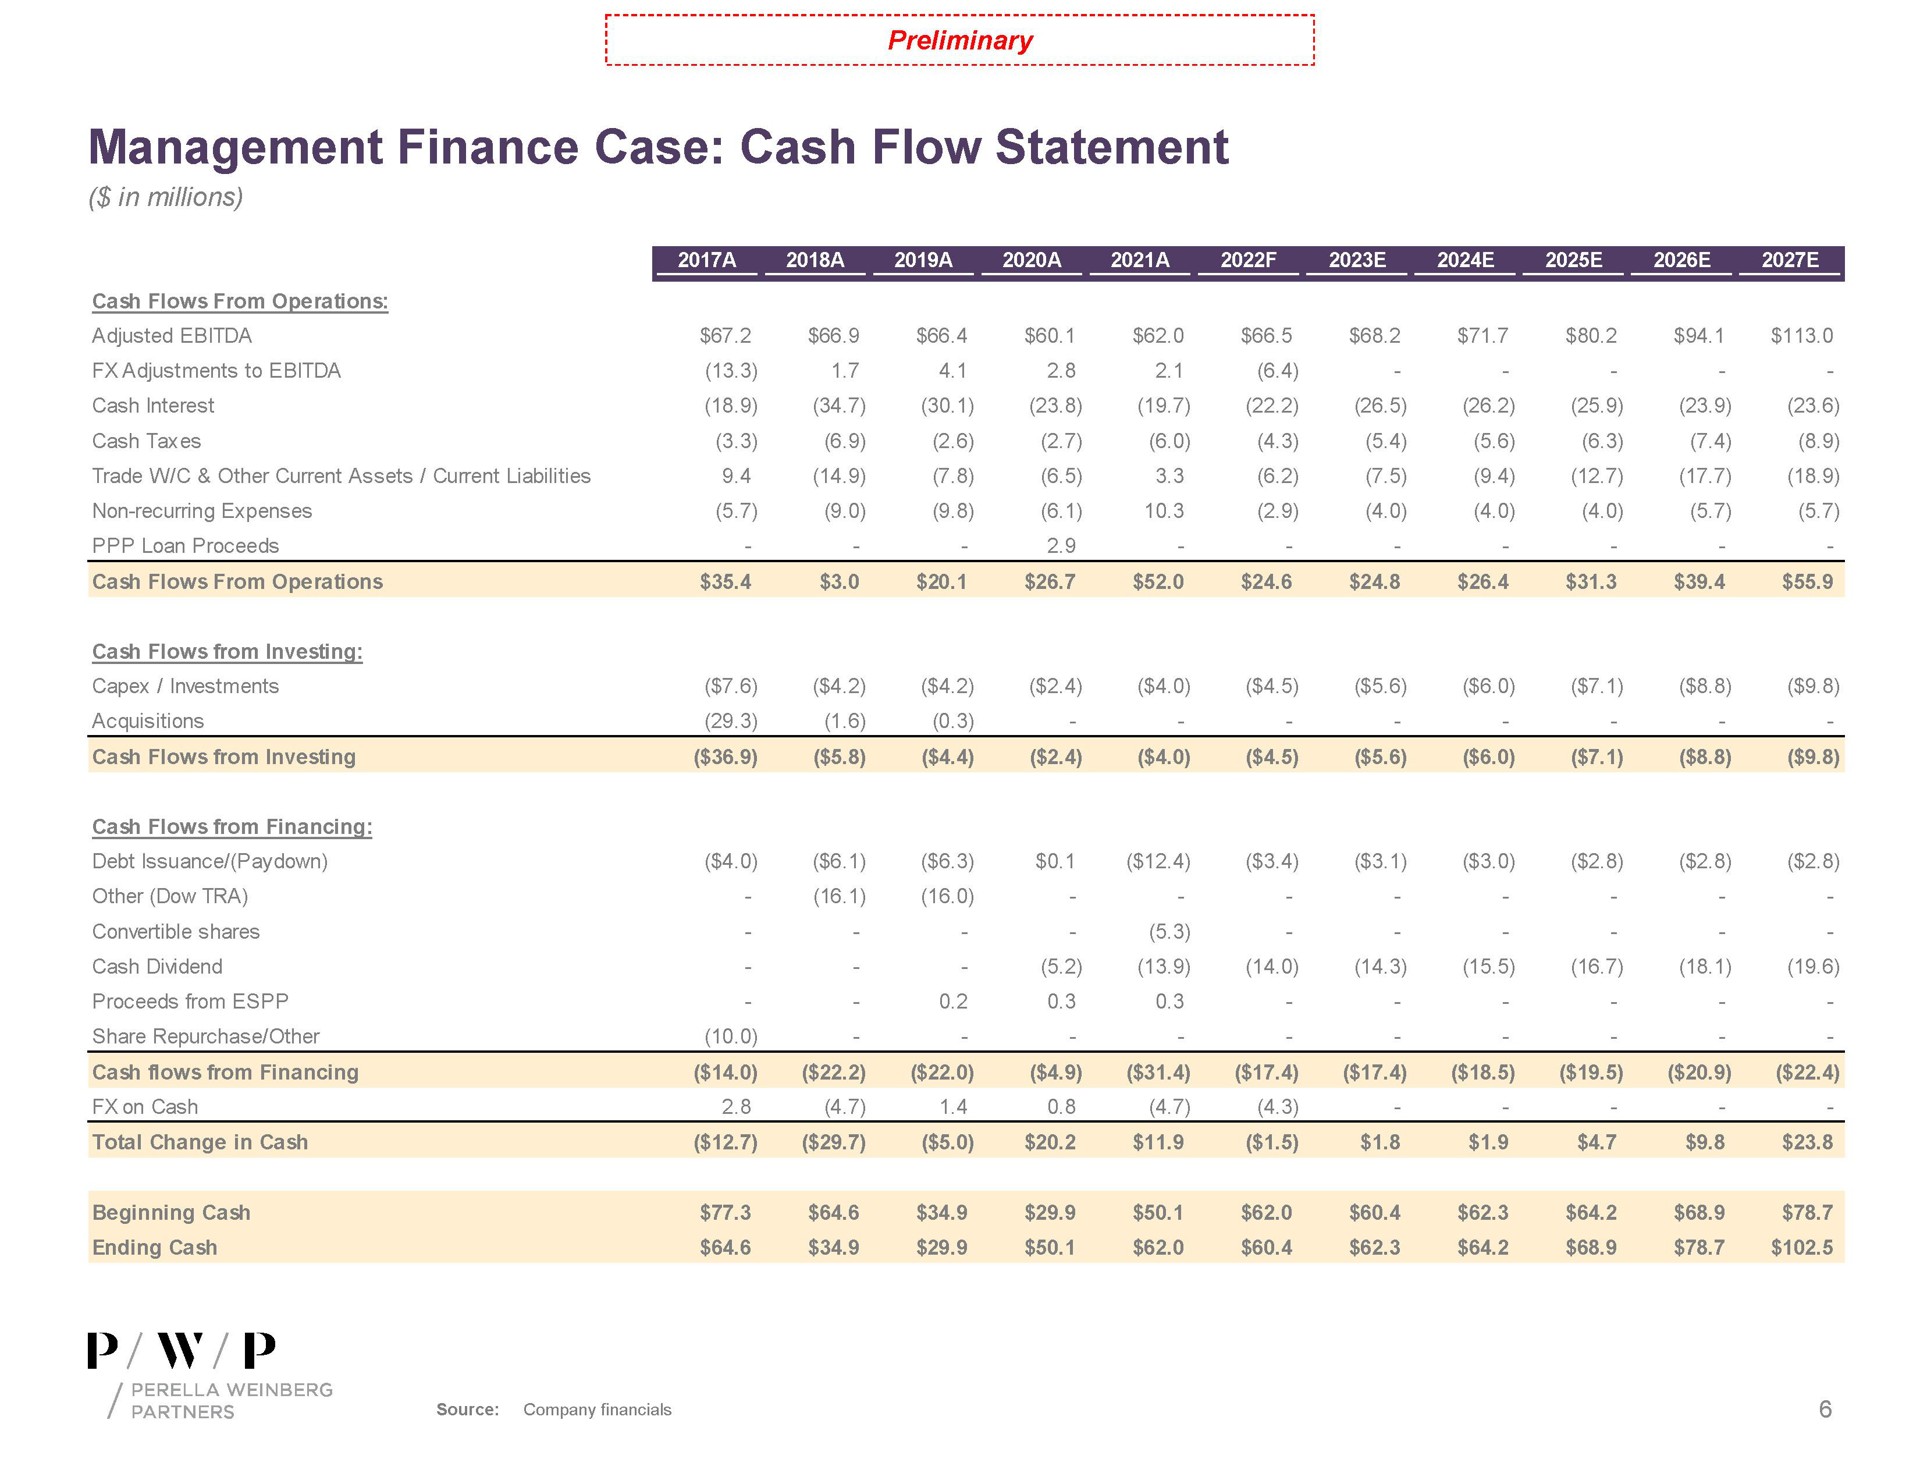 management finance case cash flow statement | Perella Weinberg Partners